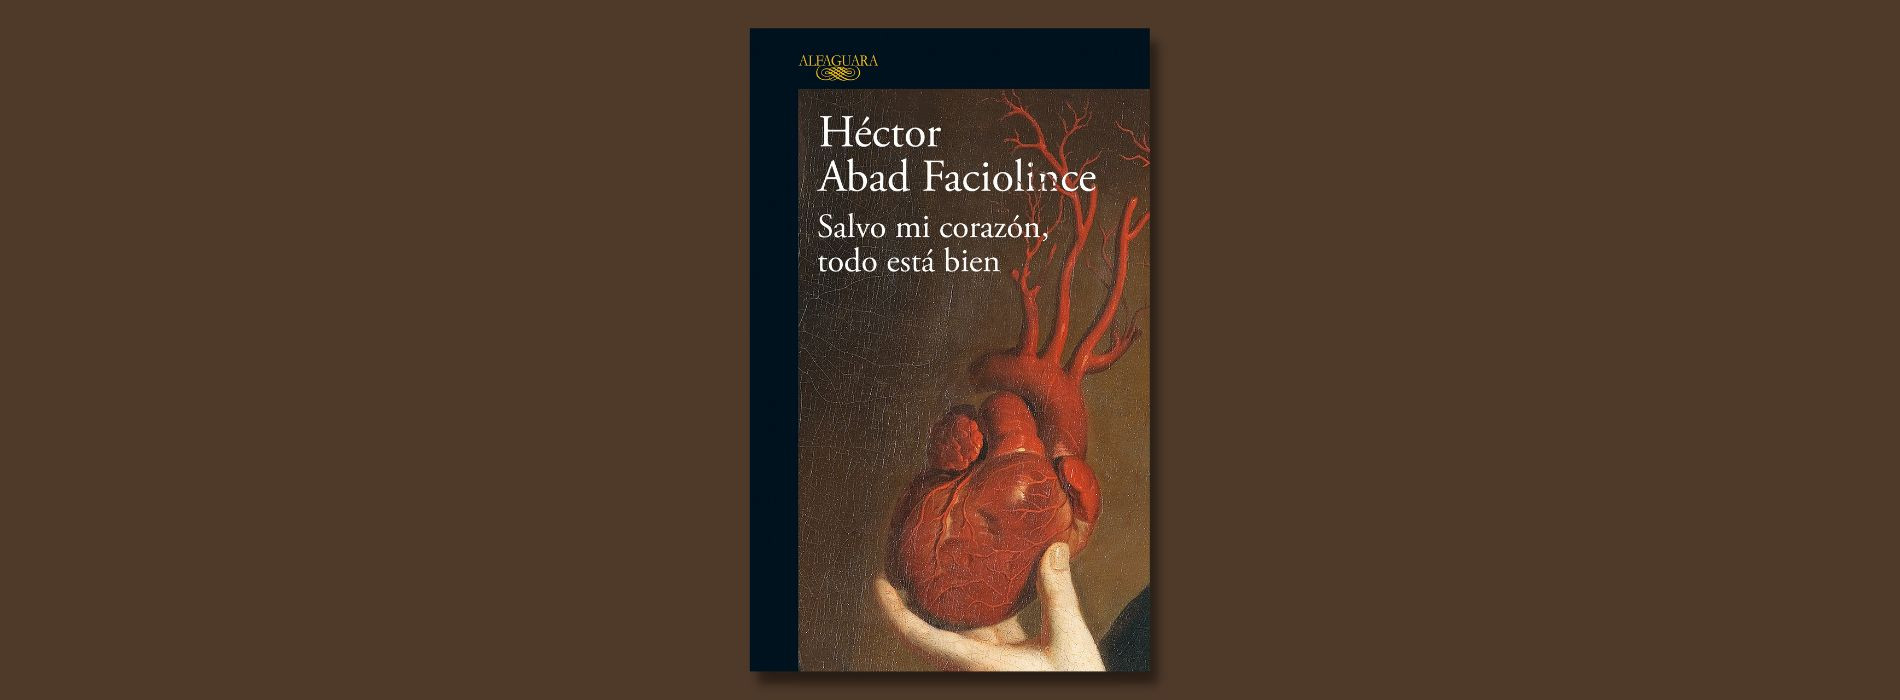 https://www.happybooks.com.co/salvo-mi-corazon-todo-esta-bien-hector-abad-faciolince